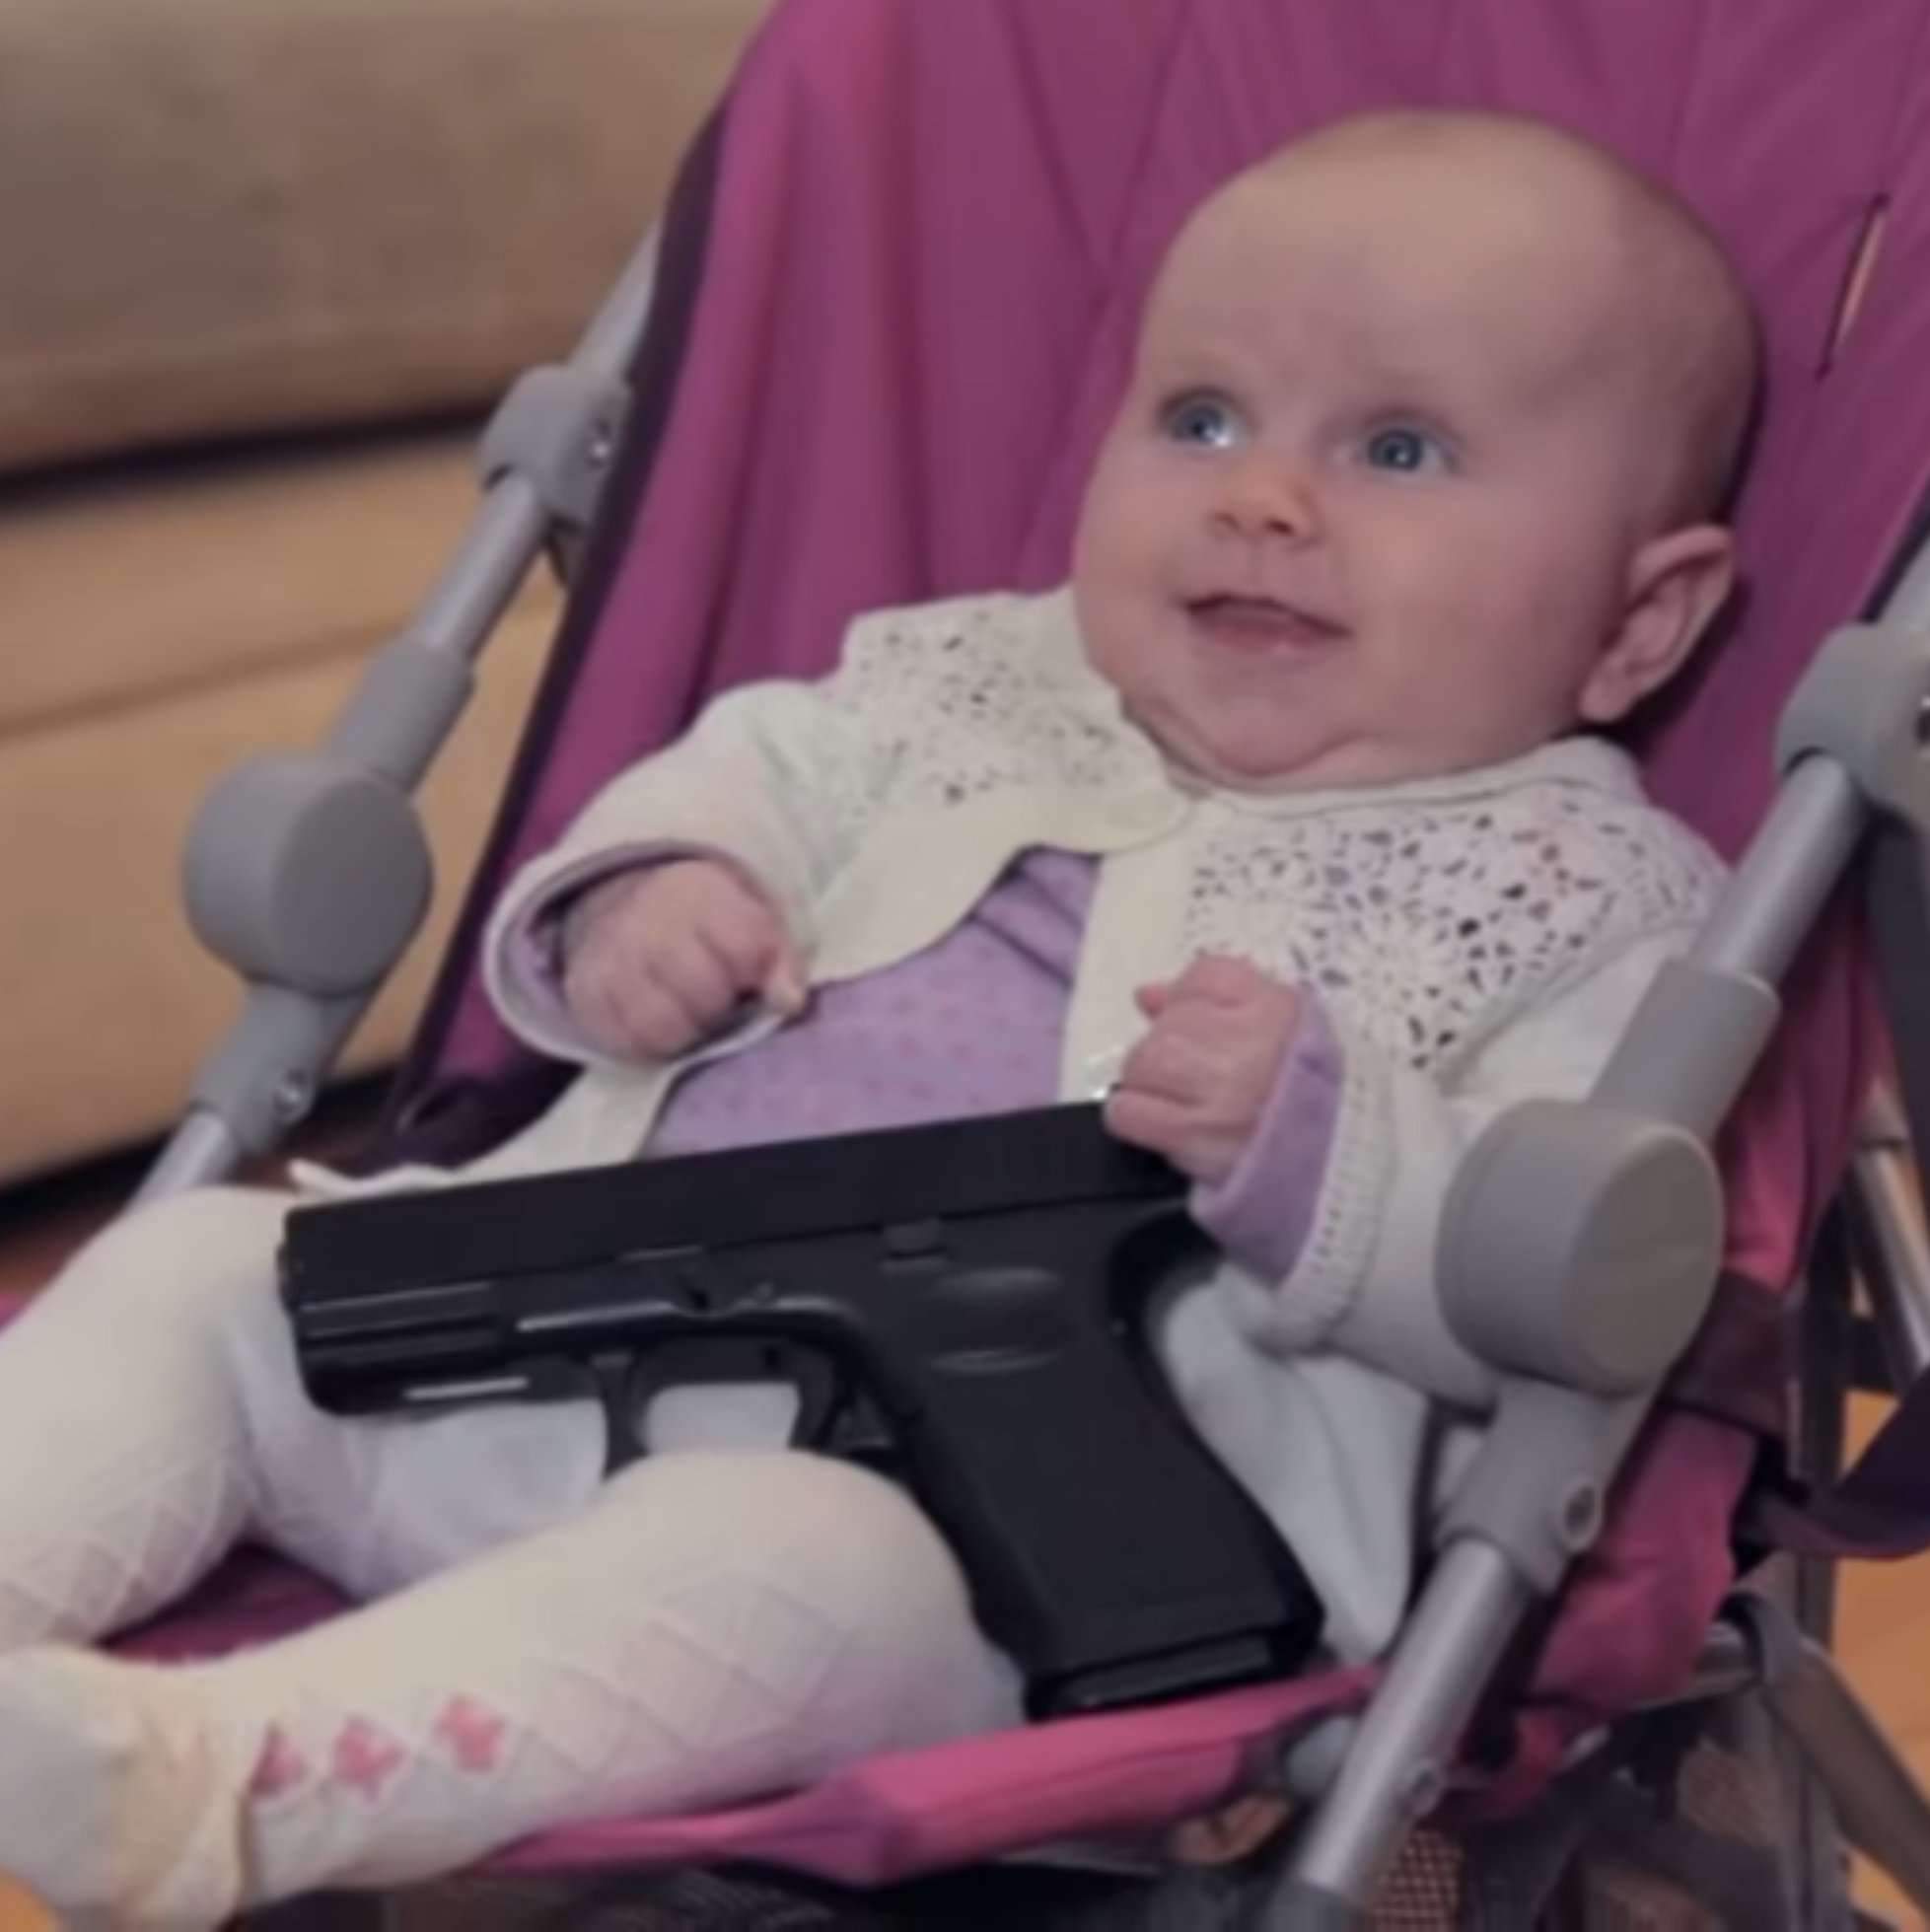 Baby gun. Baby with a Gun. Criminal Baby. Baby Gun Song.